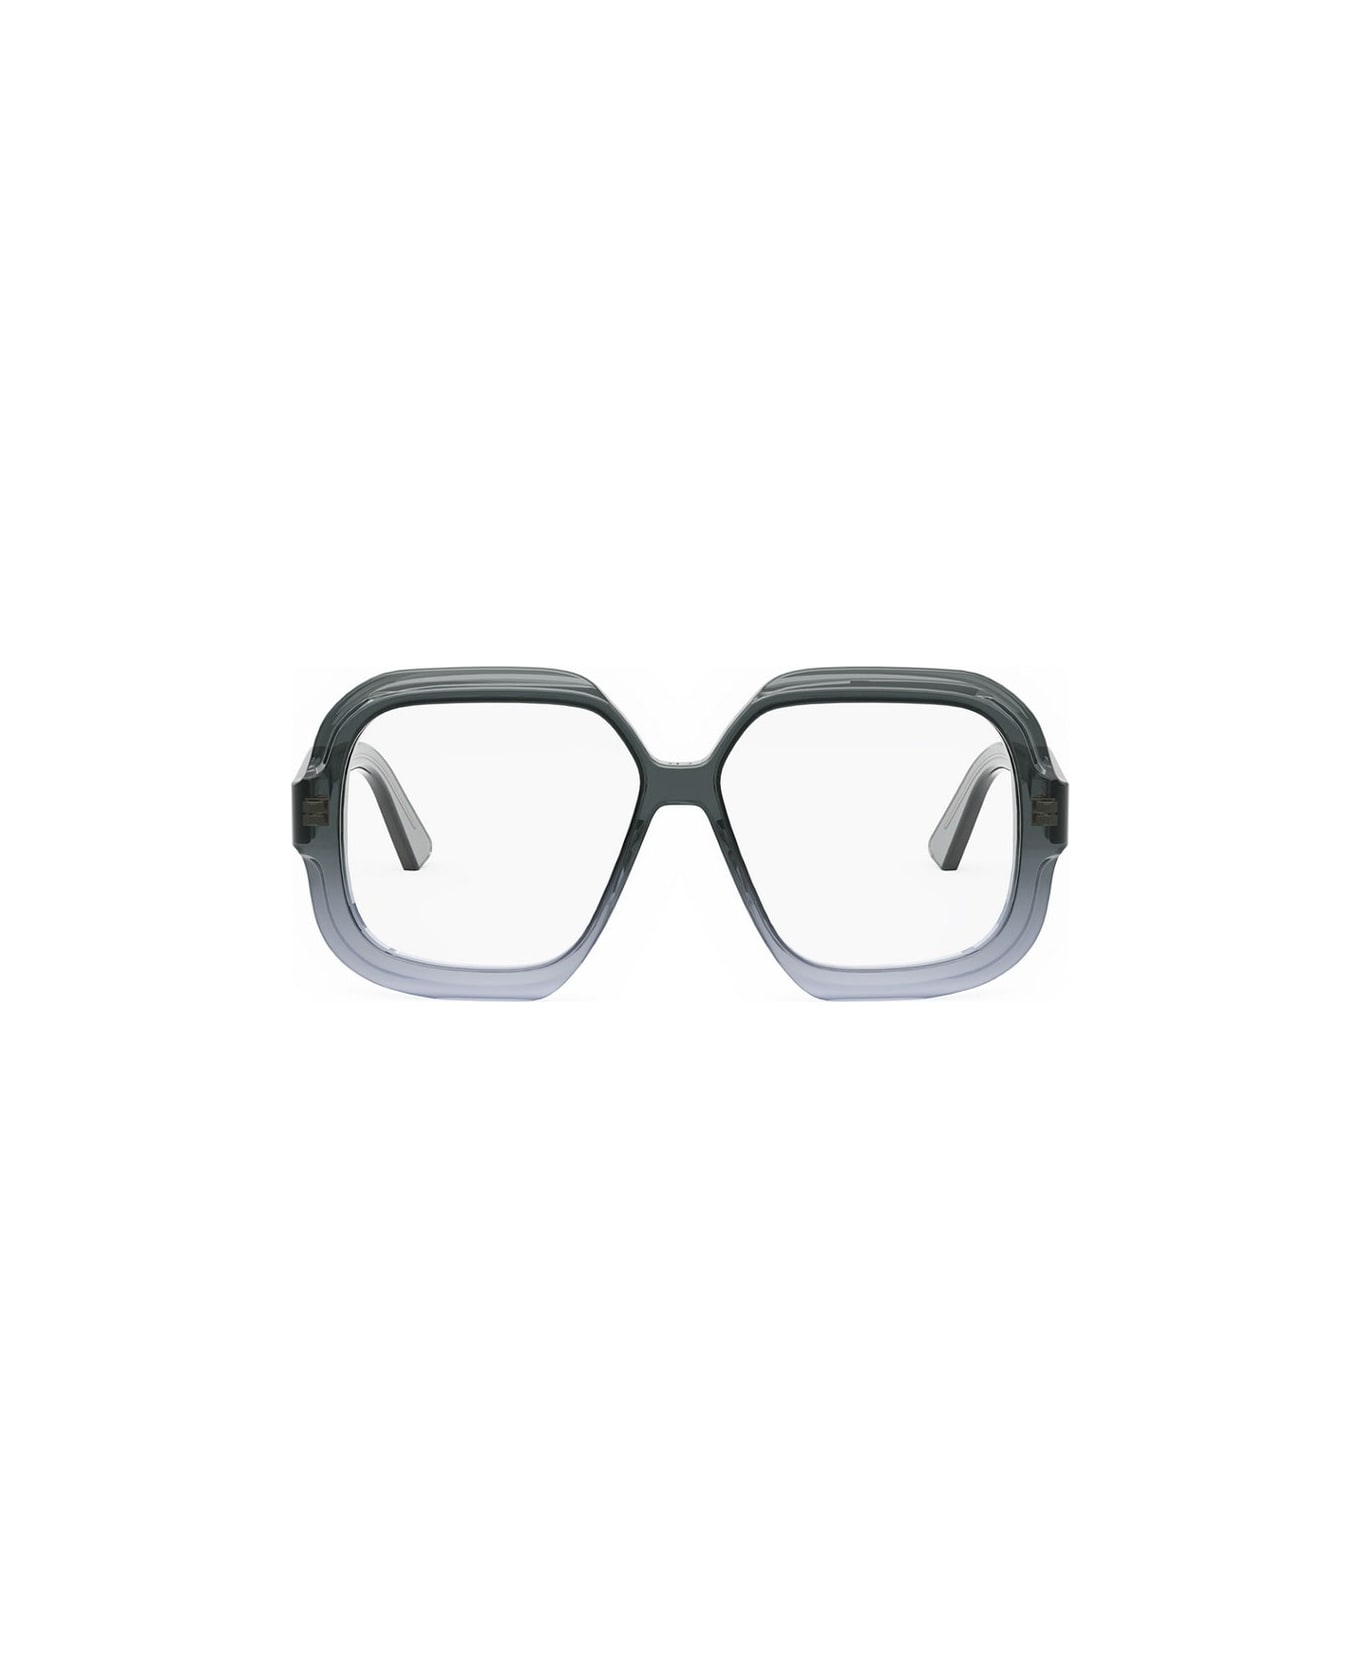 Dior Eyewear Glasses - Grigio